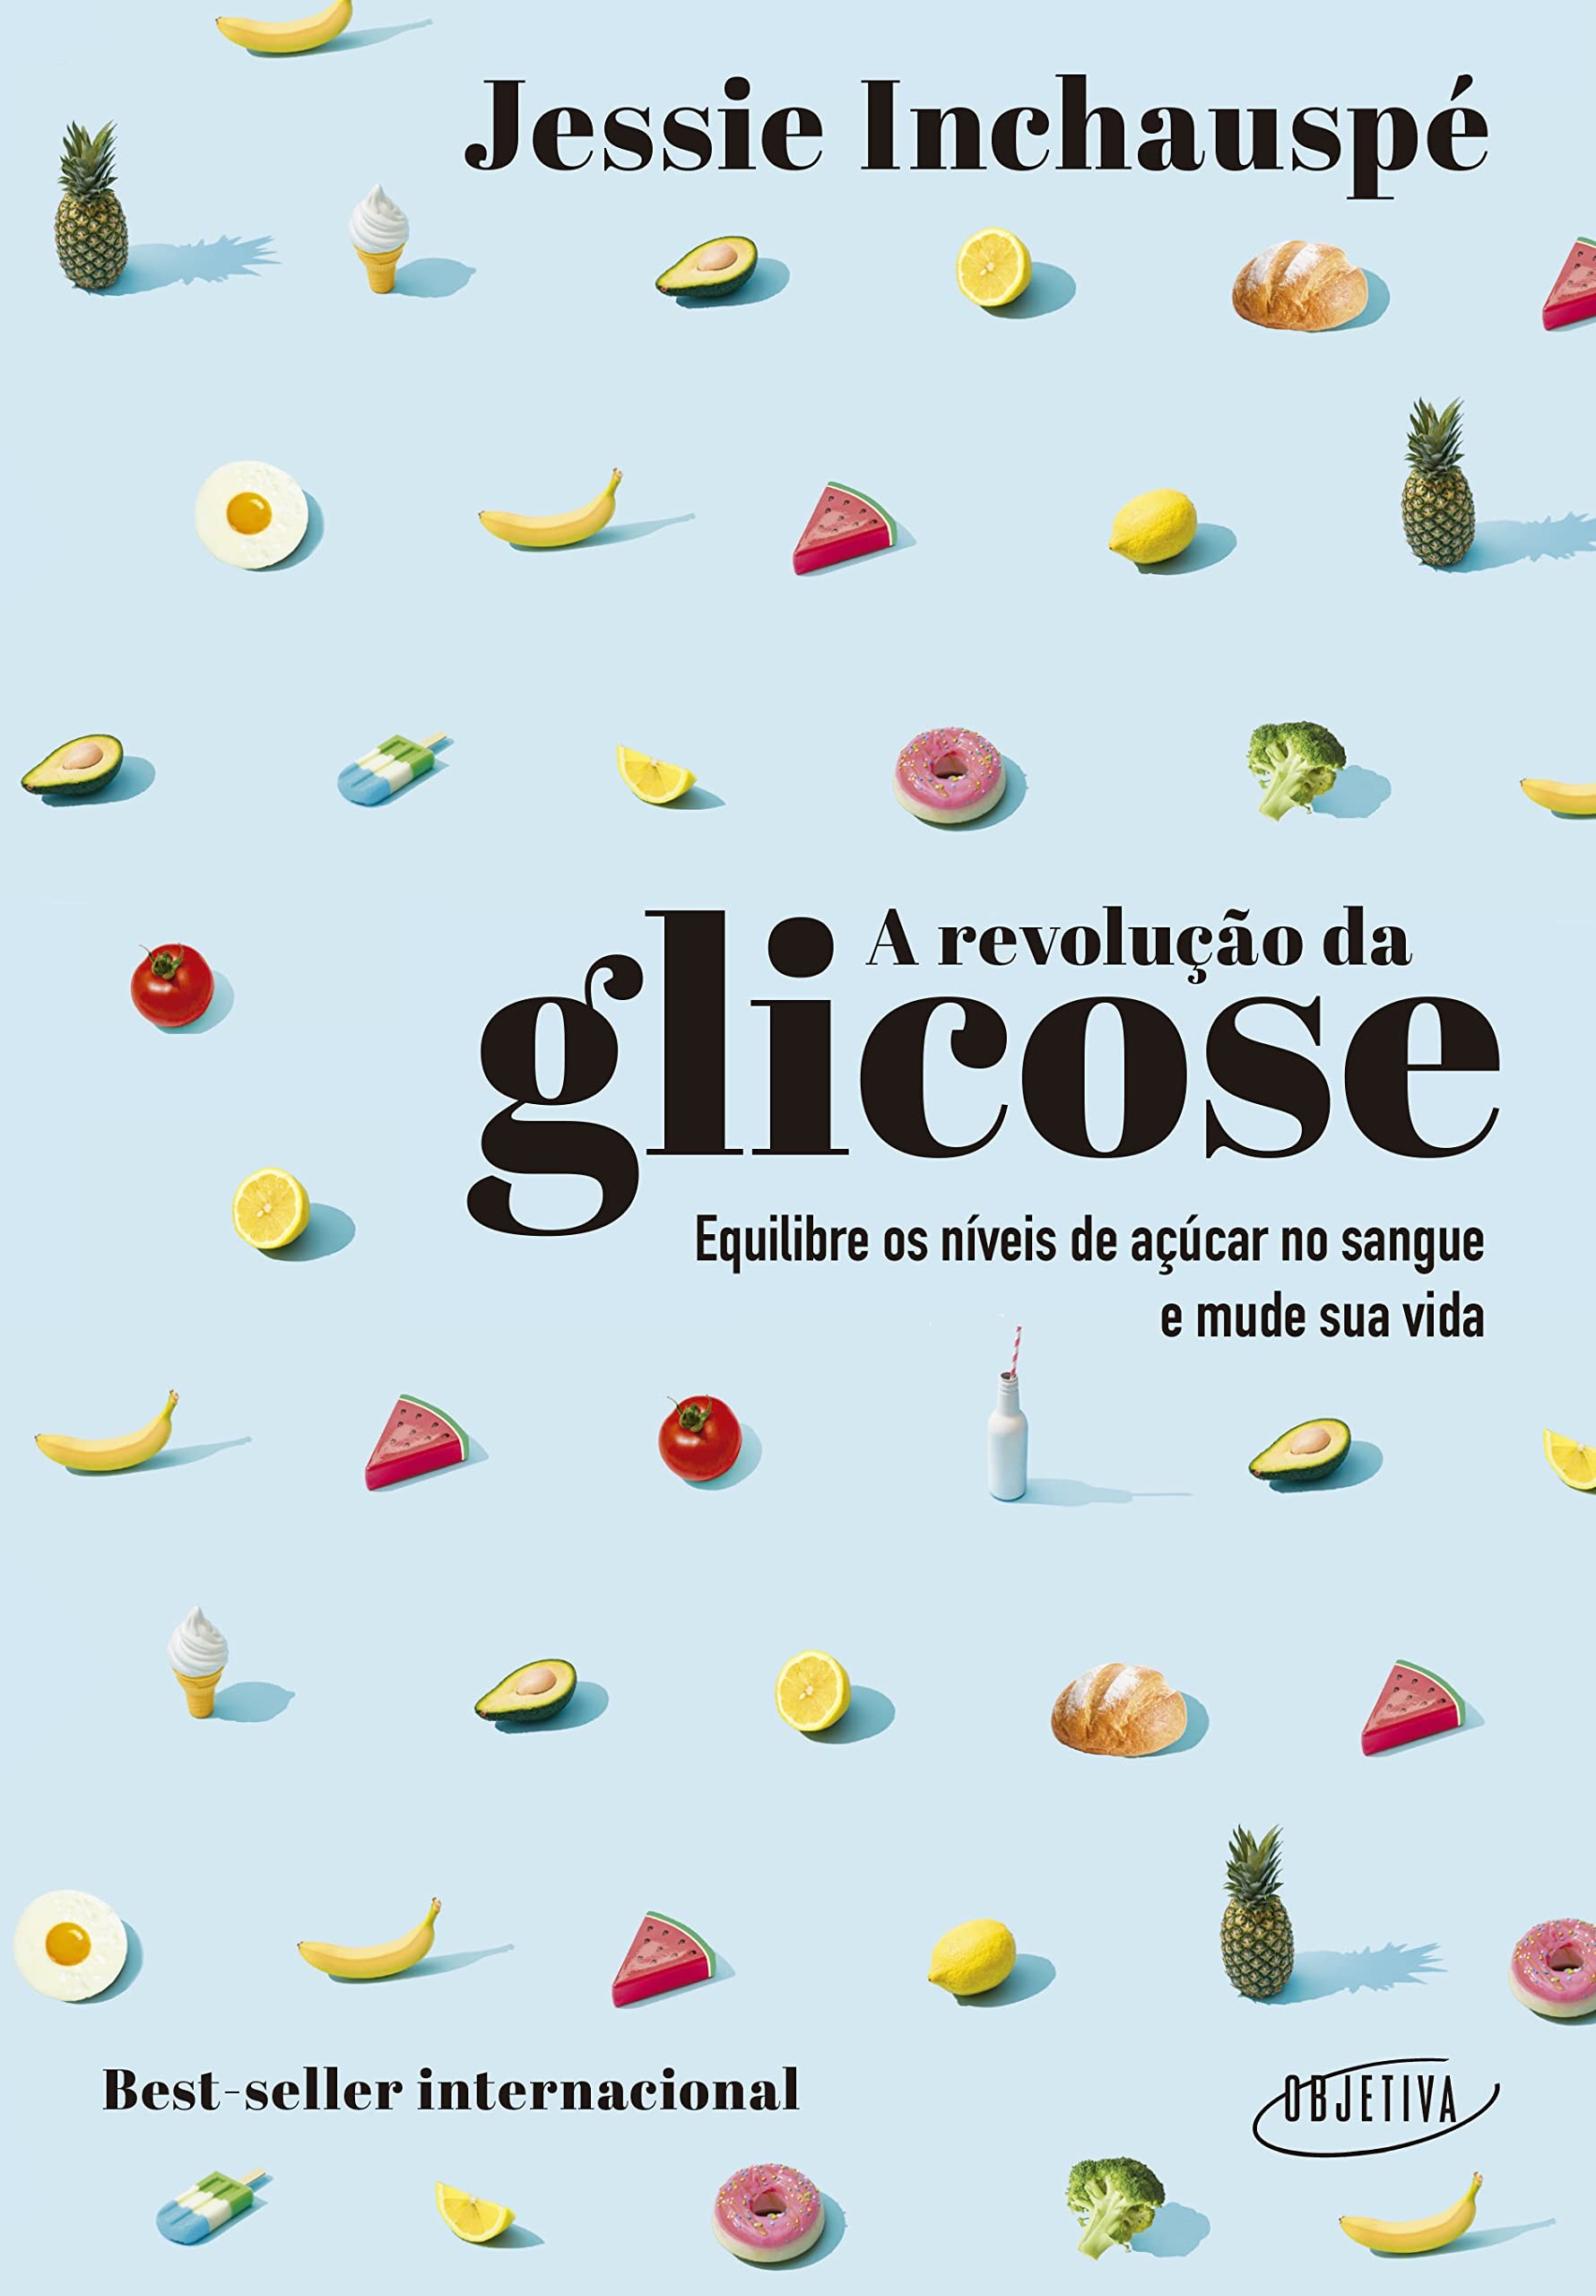 A revolução da glicose: equilibre os níveis de açúcar no sangue e mude sua saúde e sua vida, de Jessie Inchauspé (Objetiva, 272 páginas • Impresso: R$ 69,90 | E-book: R$ 39,90) (Foto: Divulgação)